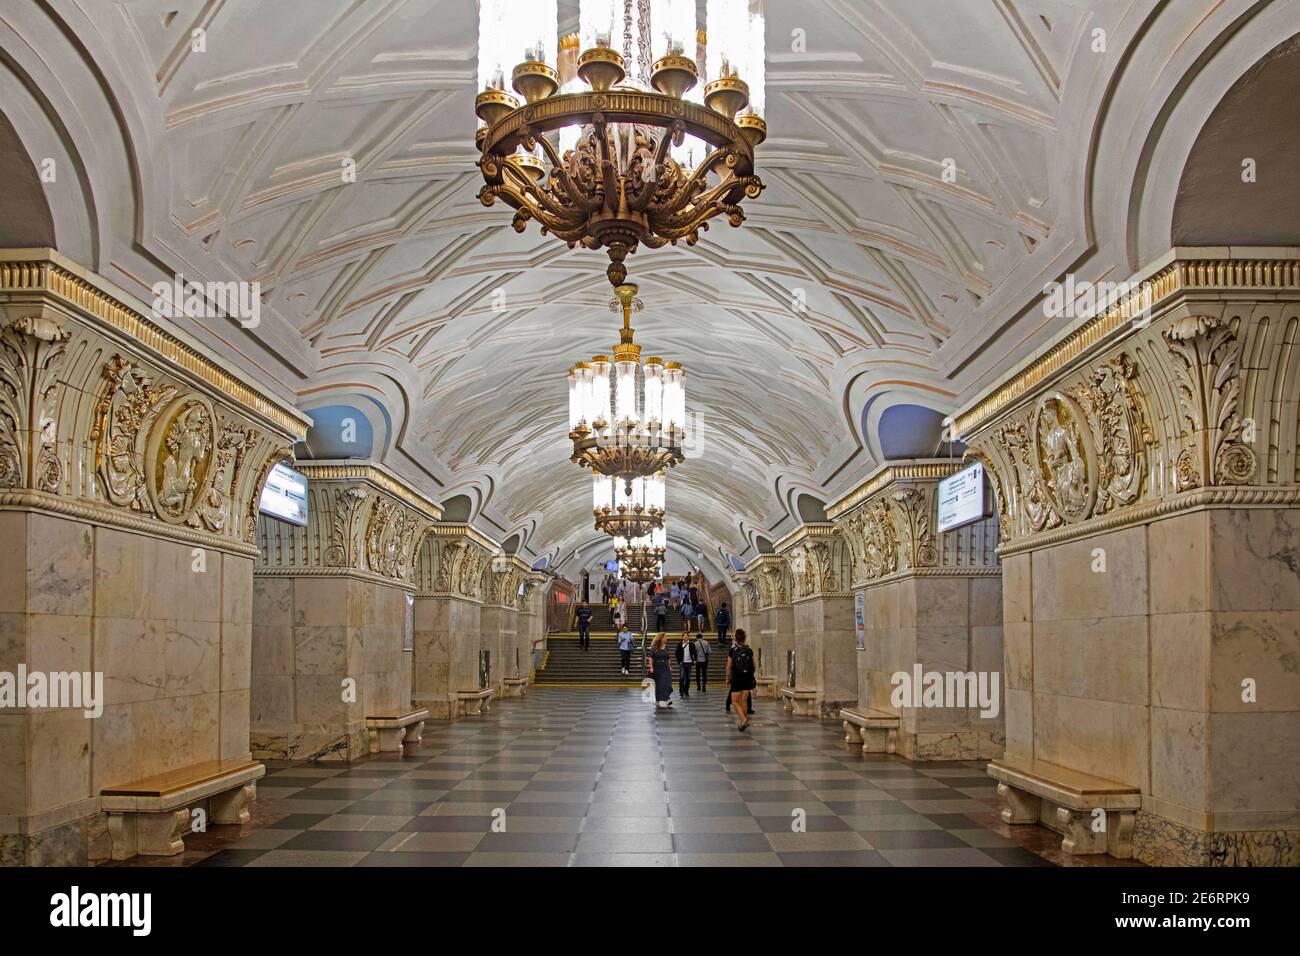 Archi in marmo bianco e ricoperti di fregi in bassorilievo di ceramica all'interno della stazione della metropolitana Prospekt Miro della linea Koltsevaya nella città di Mosca, Russia Foto Stock